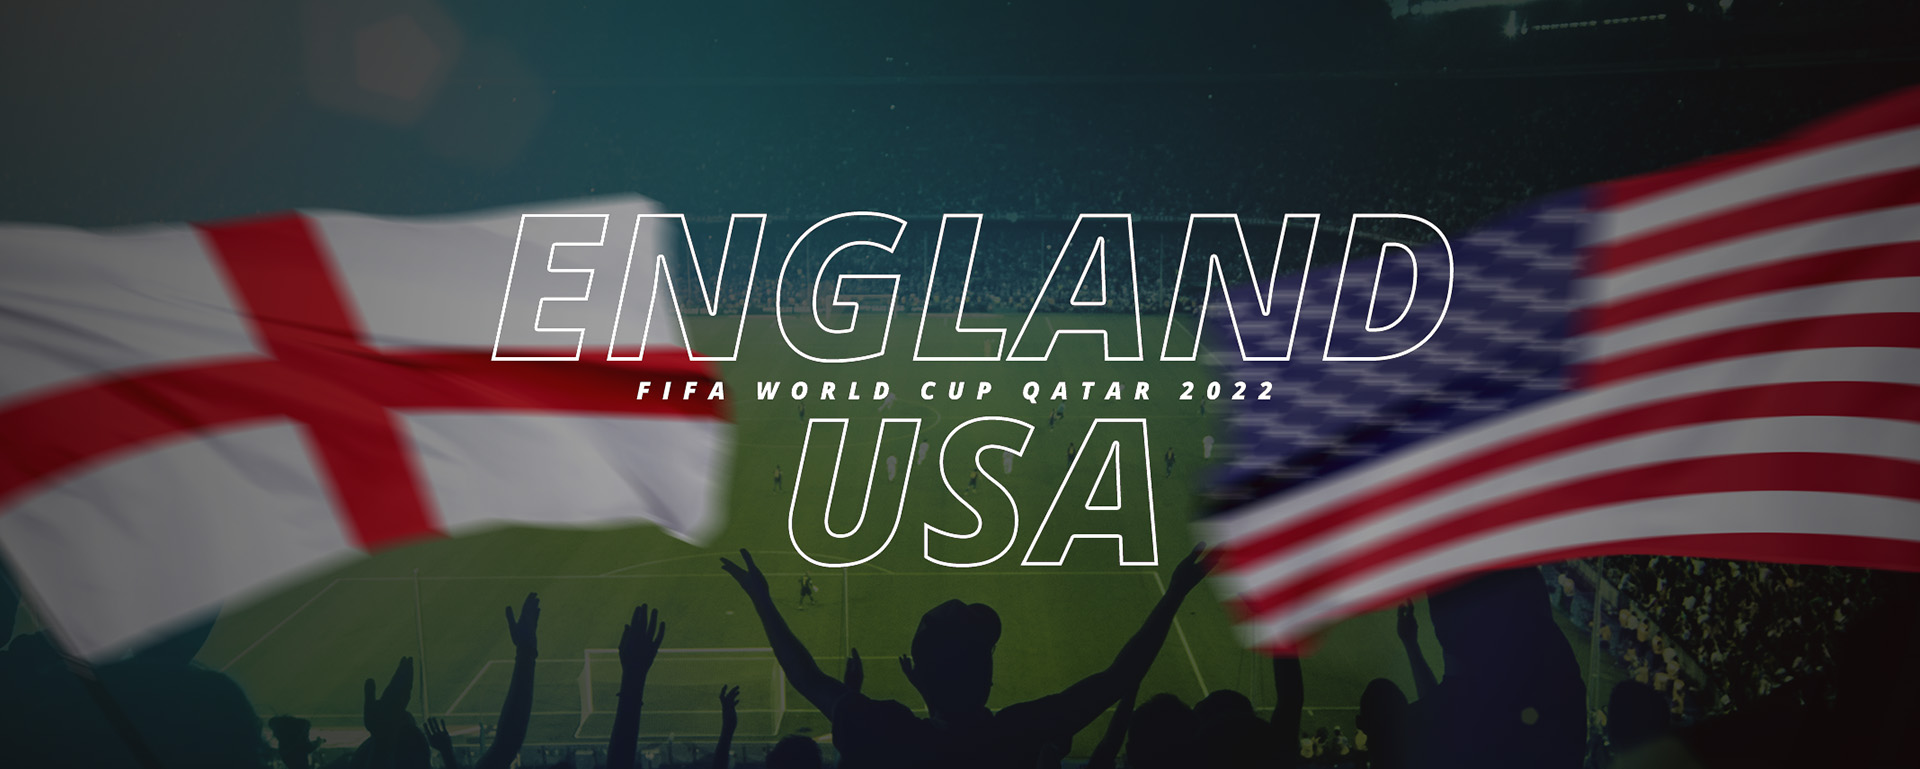 ENGLAND VS USA | FIFA WORLD CUP QATAR 2022